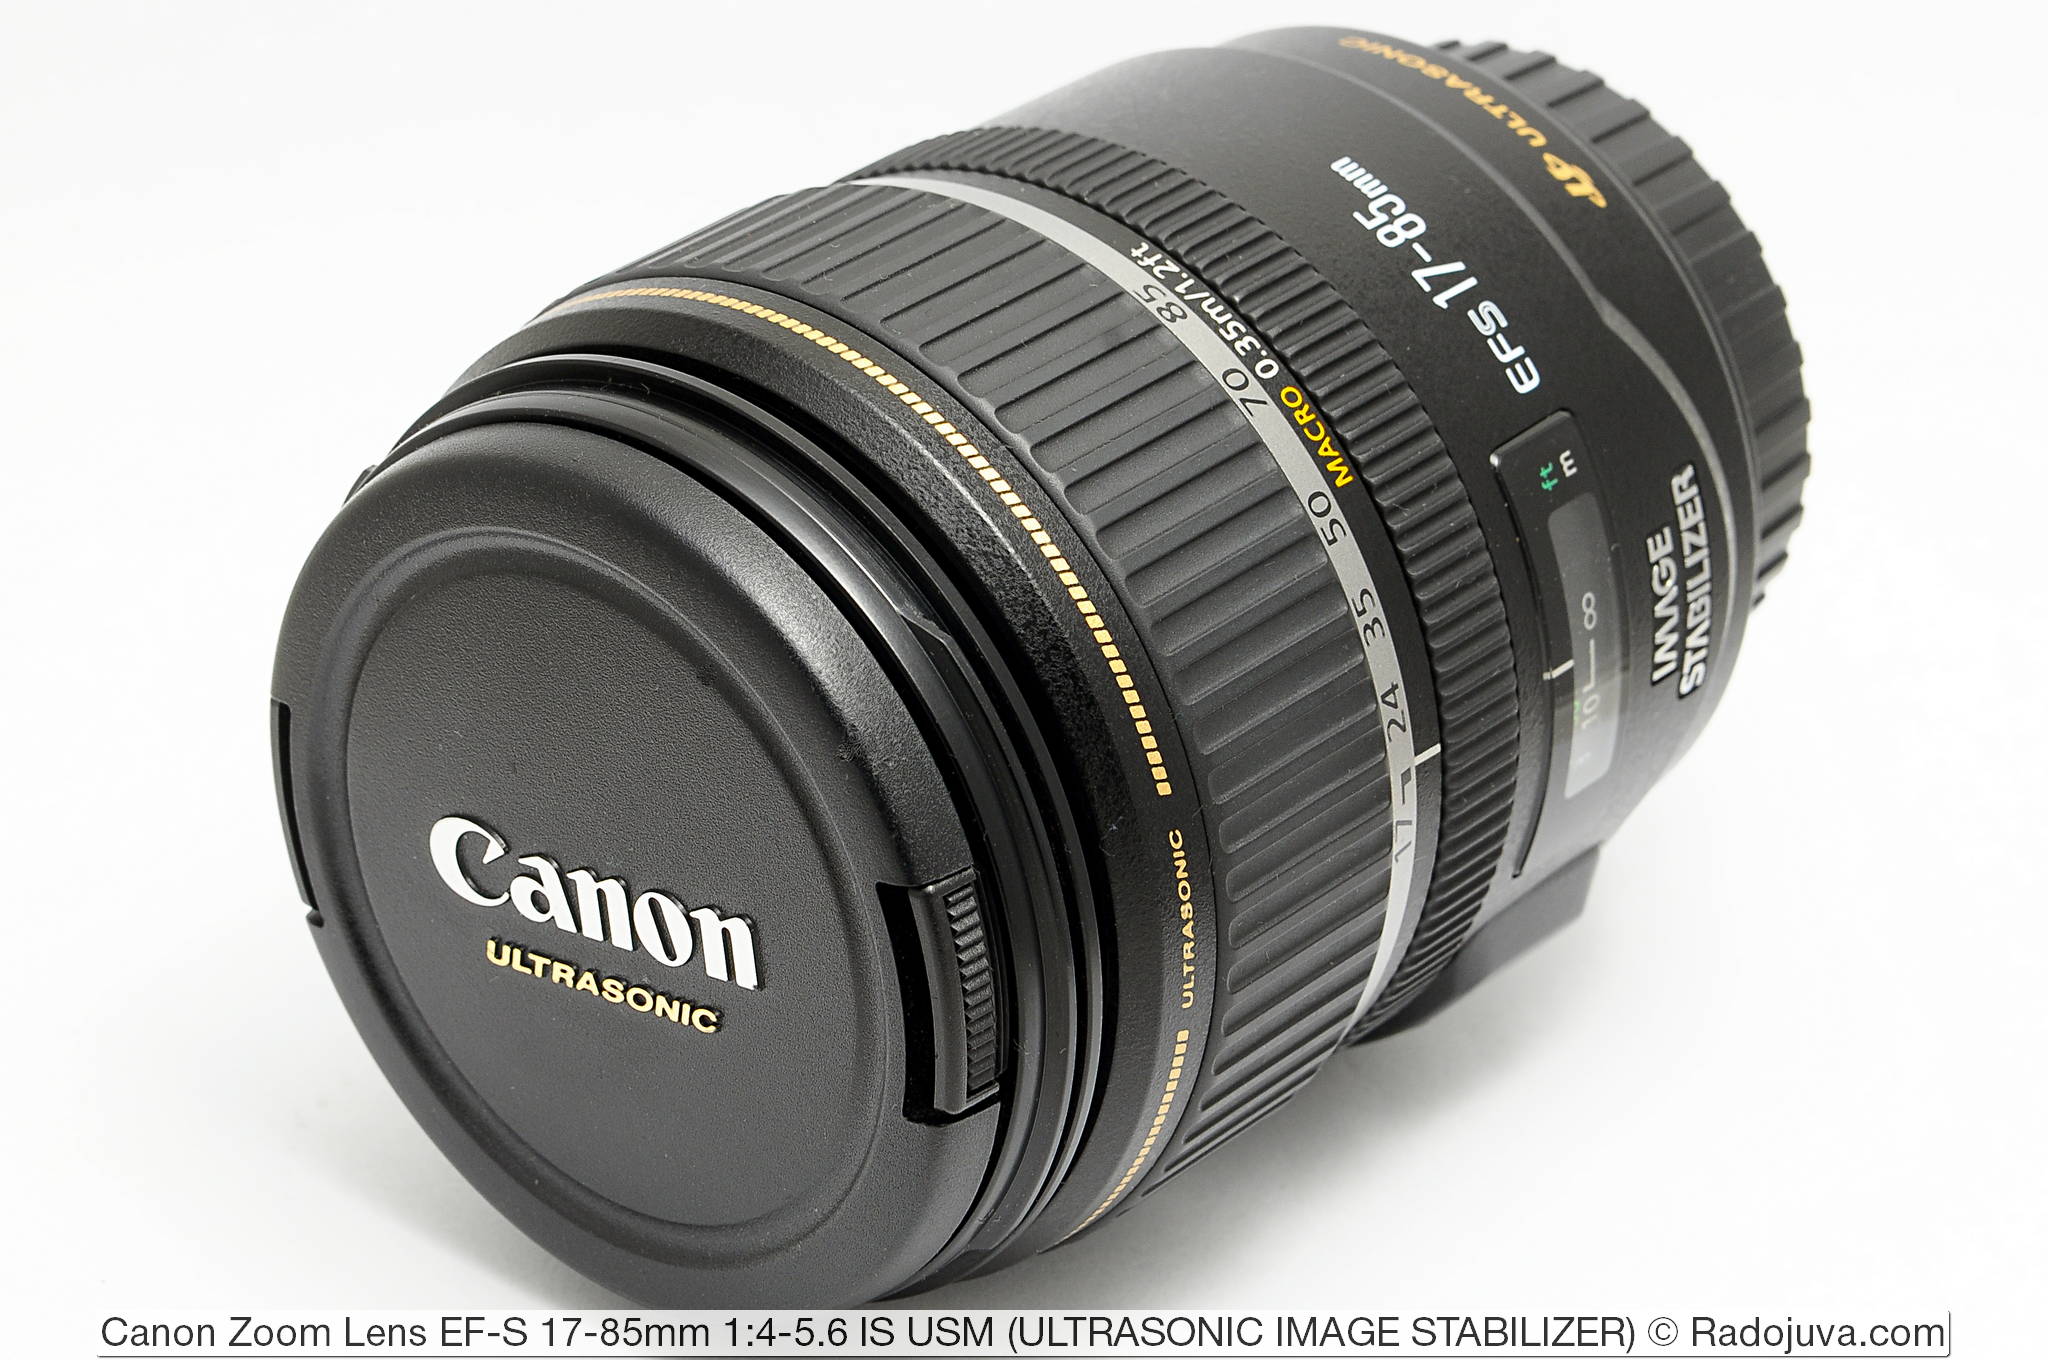 Gespecificeerd Encyclopedie magie Review of Canon Zoom Lens EF-S 17-85mm 1: 4-5.6 IS USM | Happy